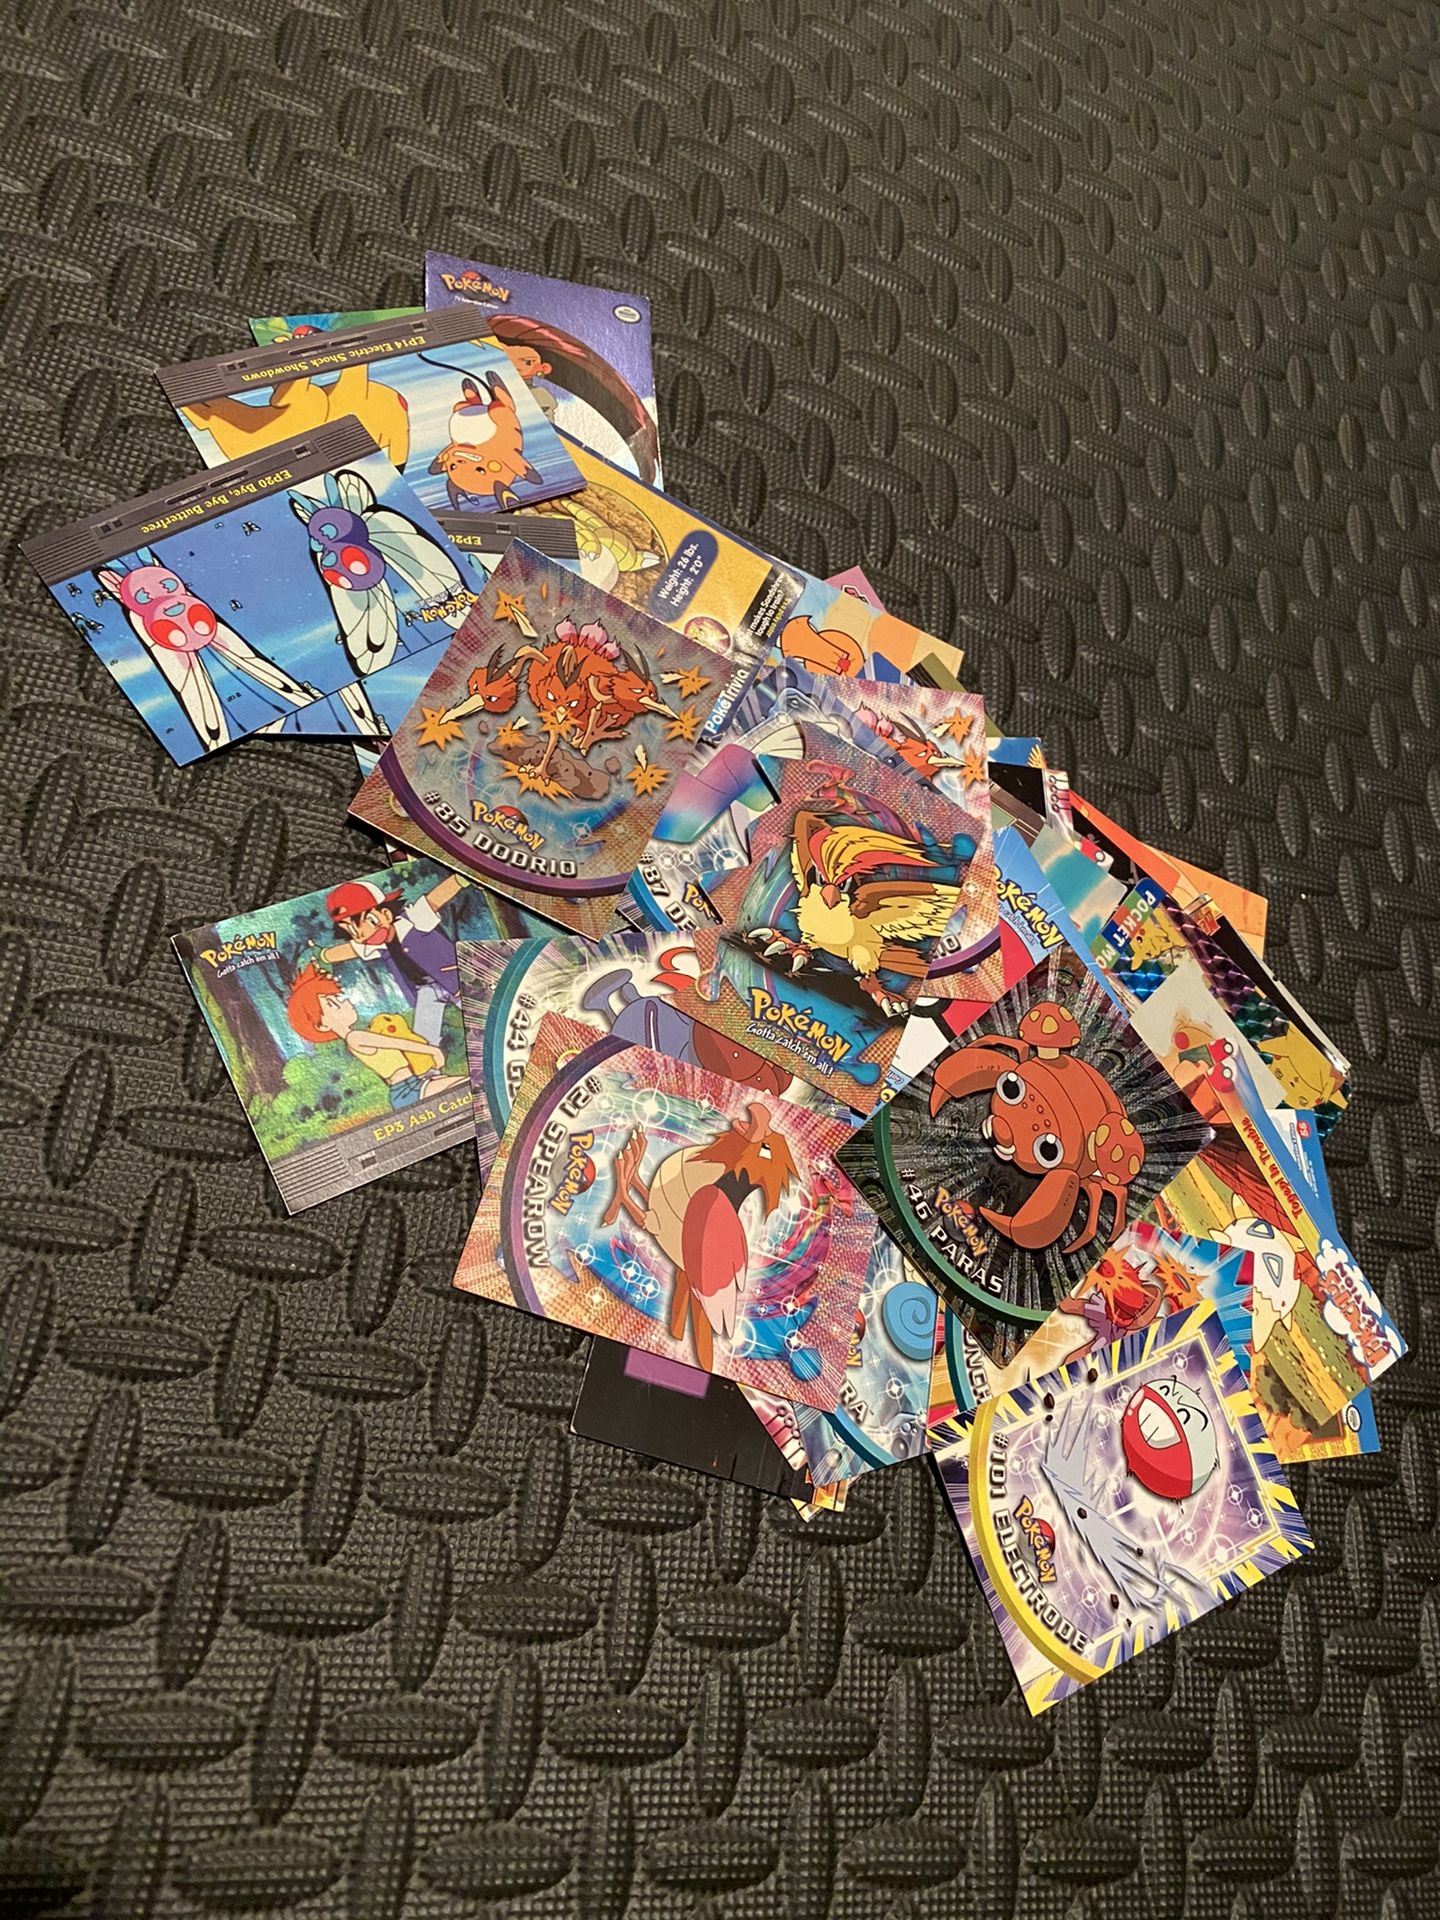 Topps Pokemon Cards